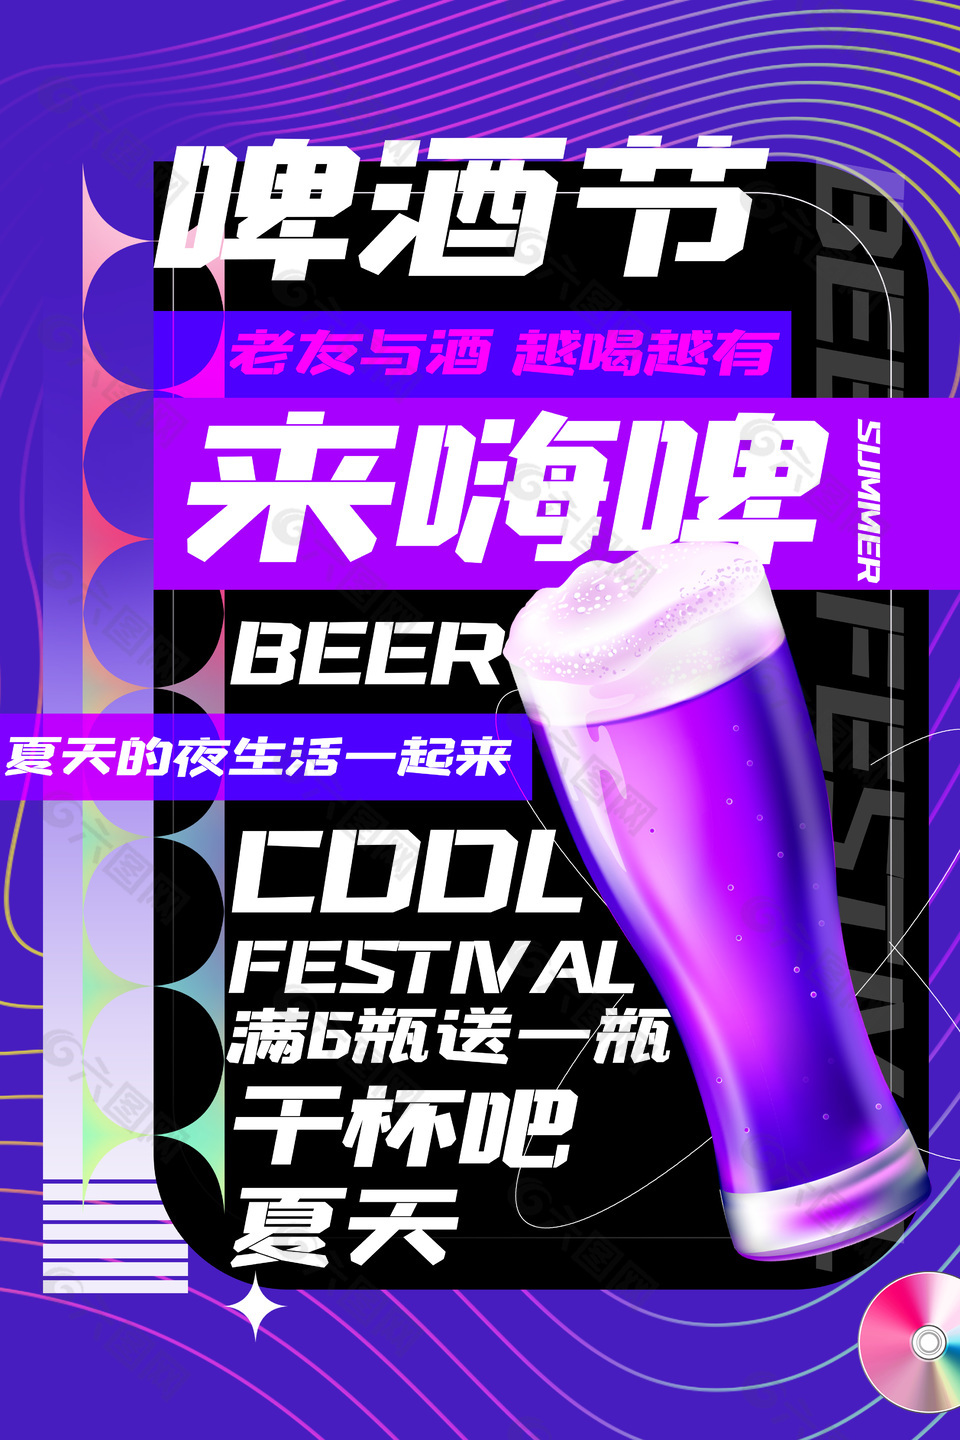 紫色炫彩啤酒节来嗨啤宣传单模板下载